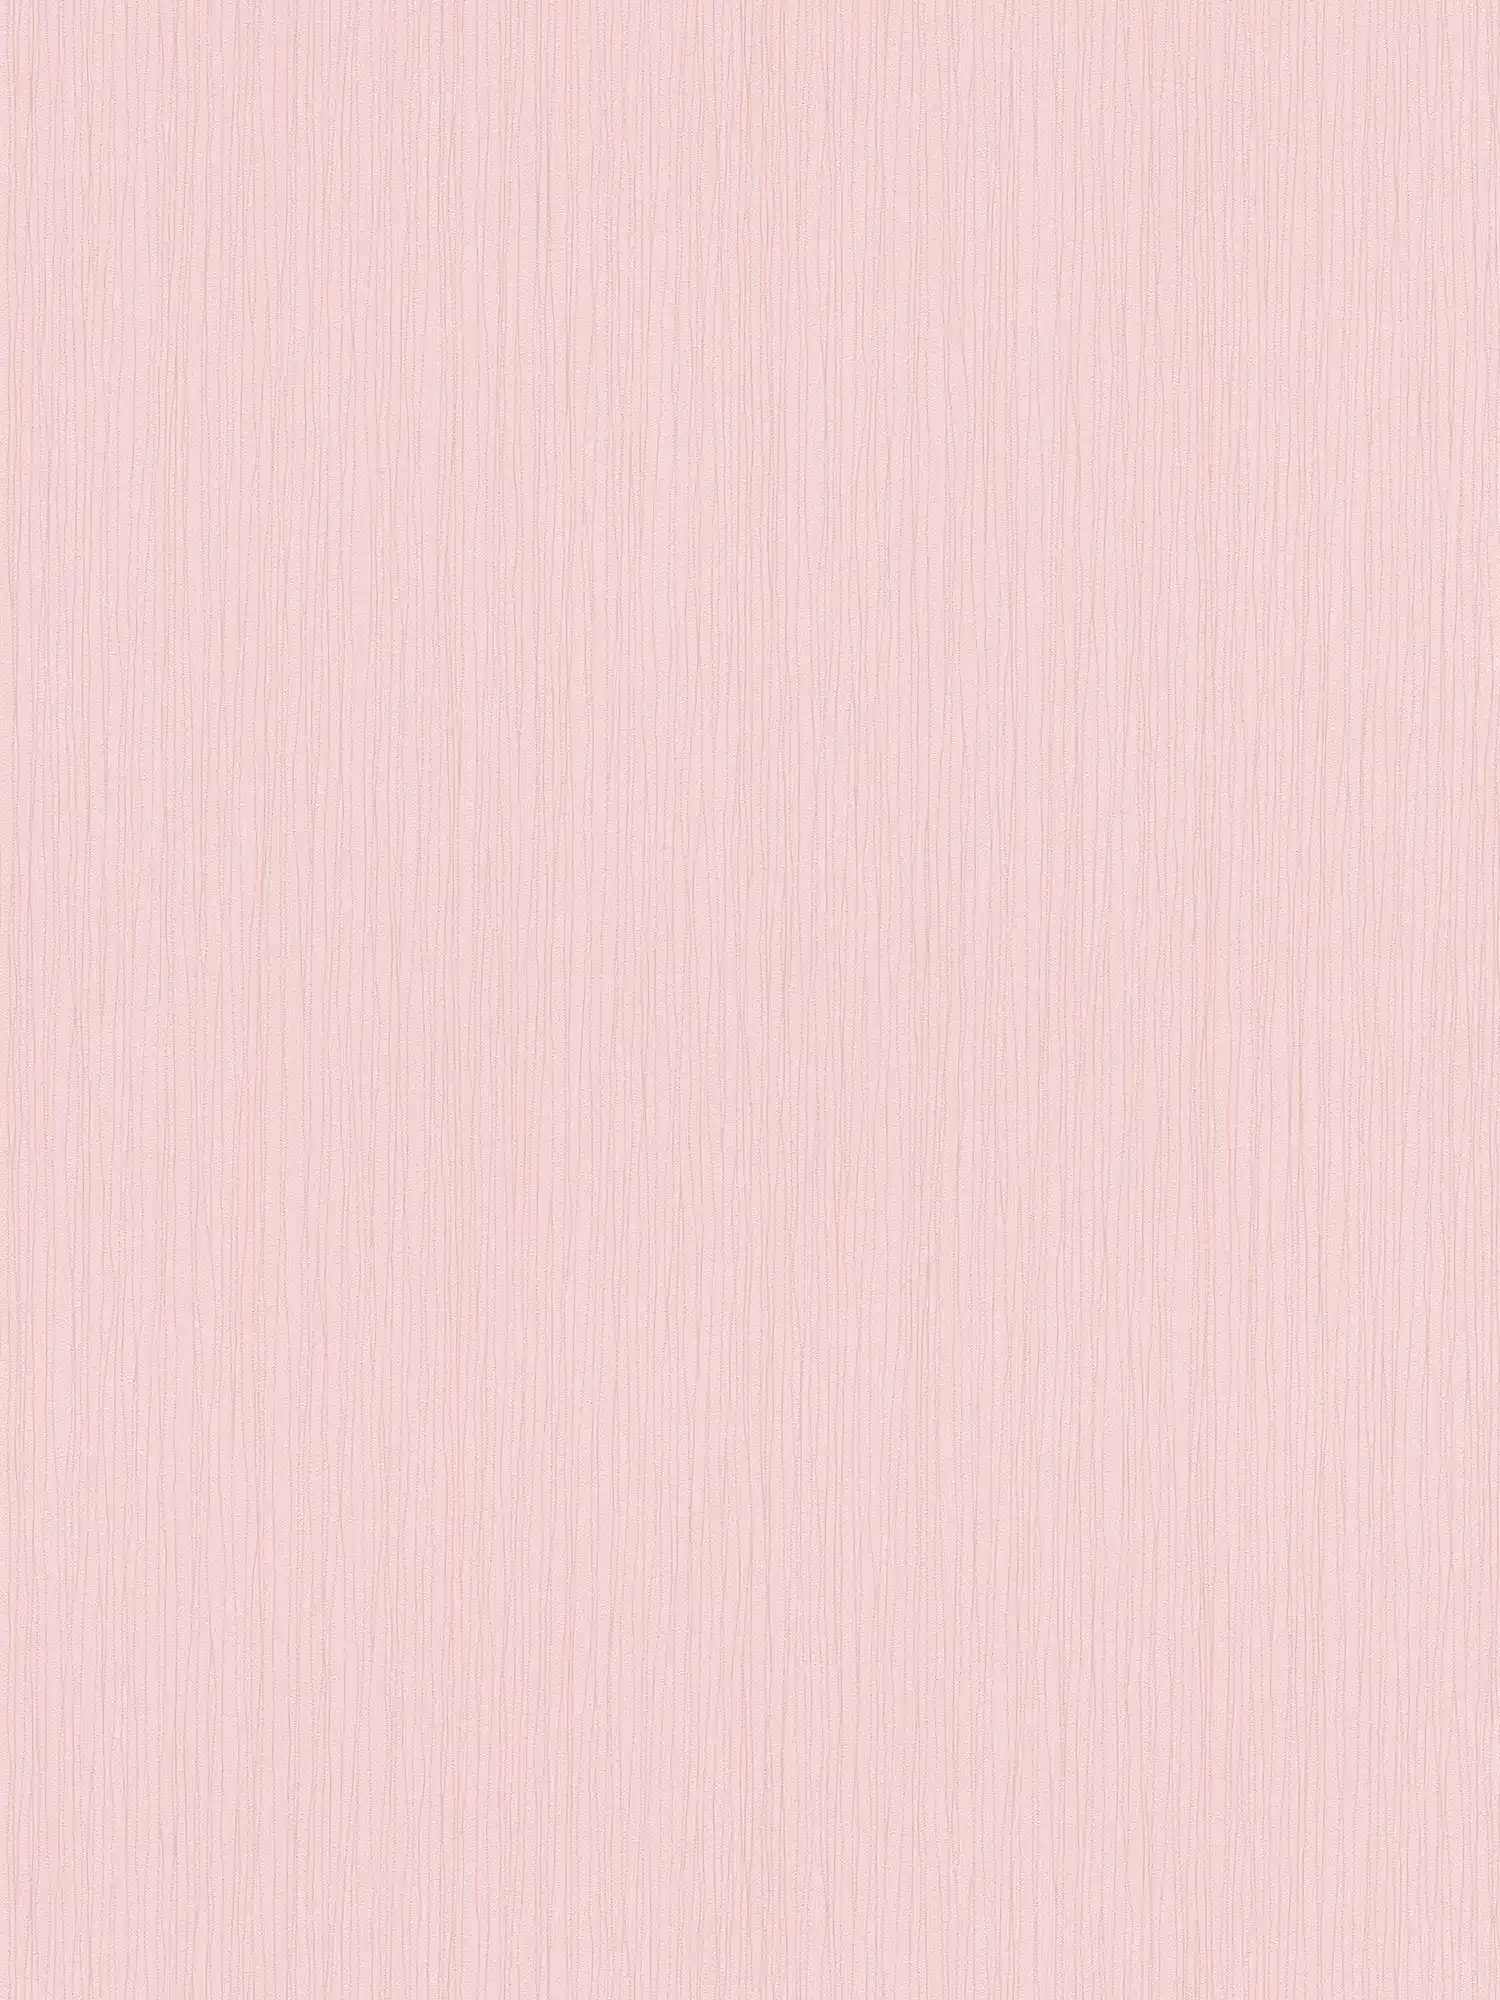 Papier peint pour chambre d'enfant fille avec structure de lignes - rose
